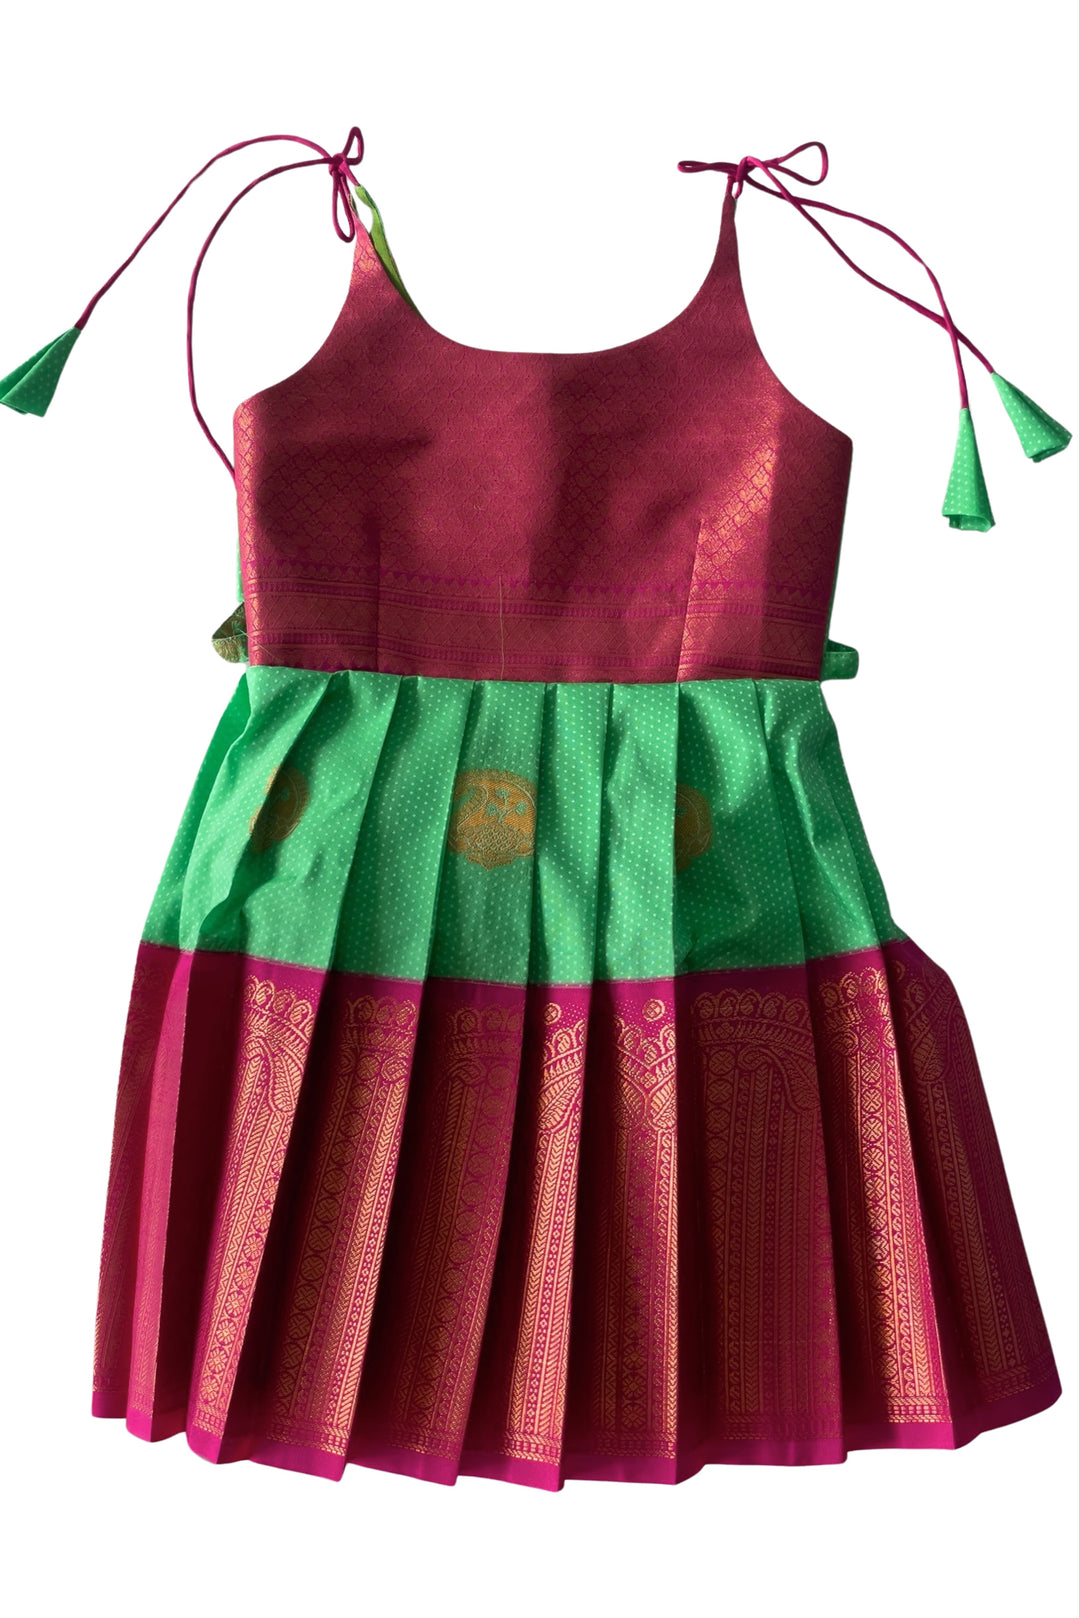 The Nesavu Tie-up Frock Green and Pink Silk Blend Tie-Up Frock for Girls Nesavu 14 (6M) / Green / Style 1 T307A-14 Girls Green Silk Frock | Pink and Gold Traditional Motifs | The Nesavu